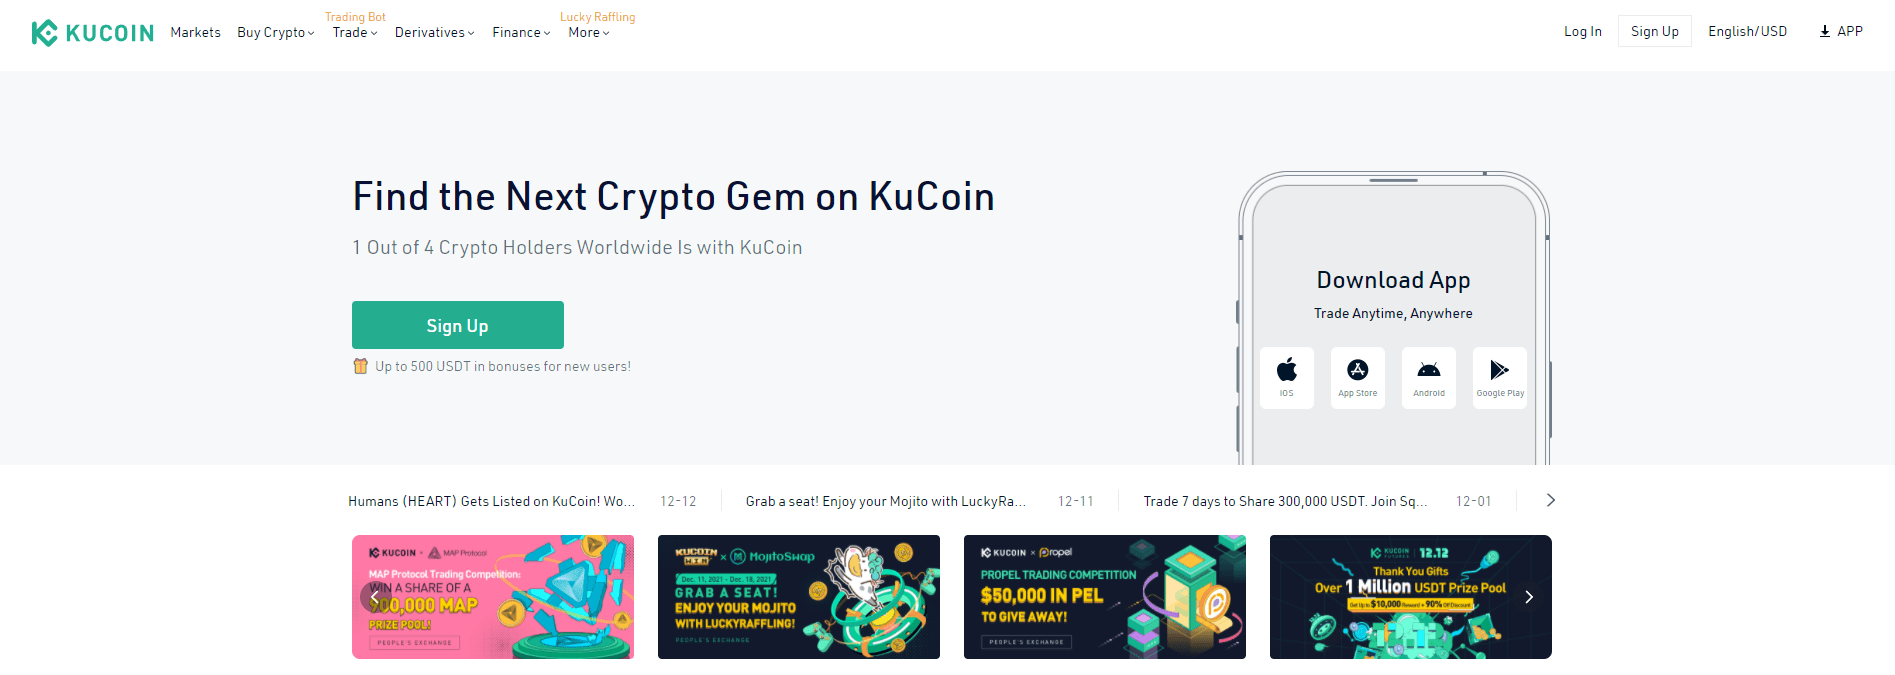 официальный сайт KuCoin